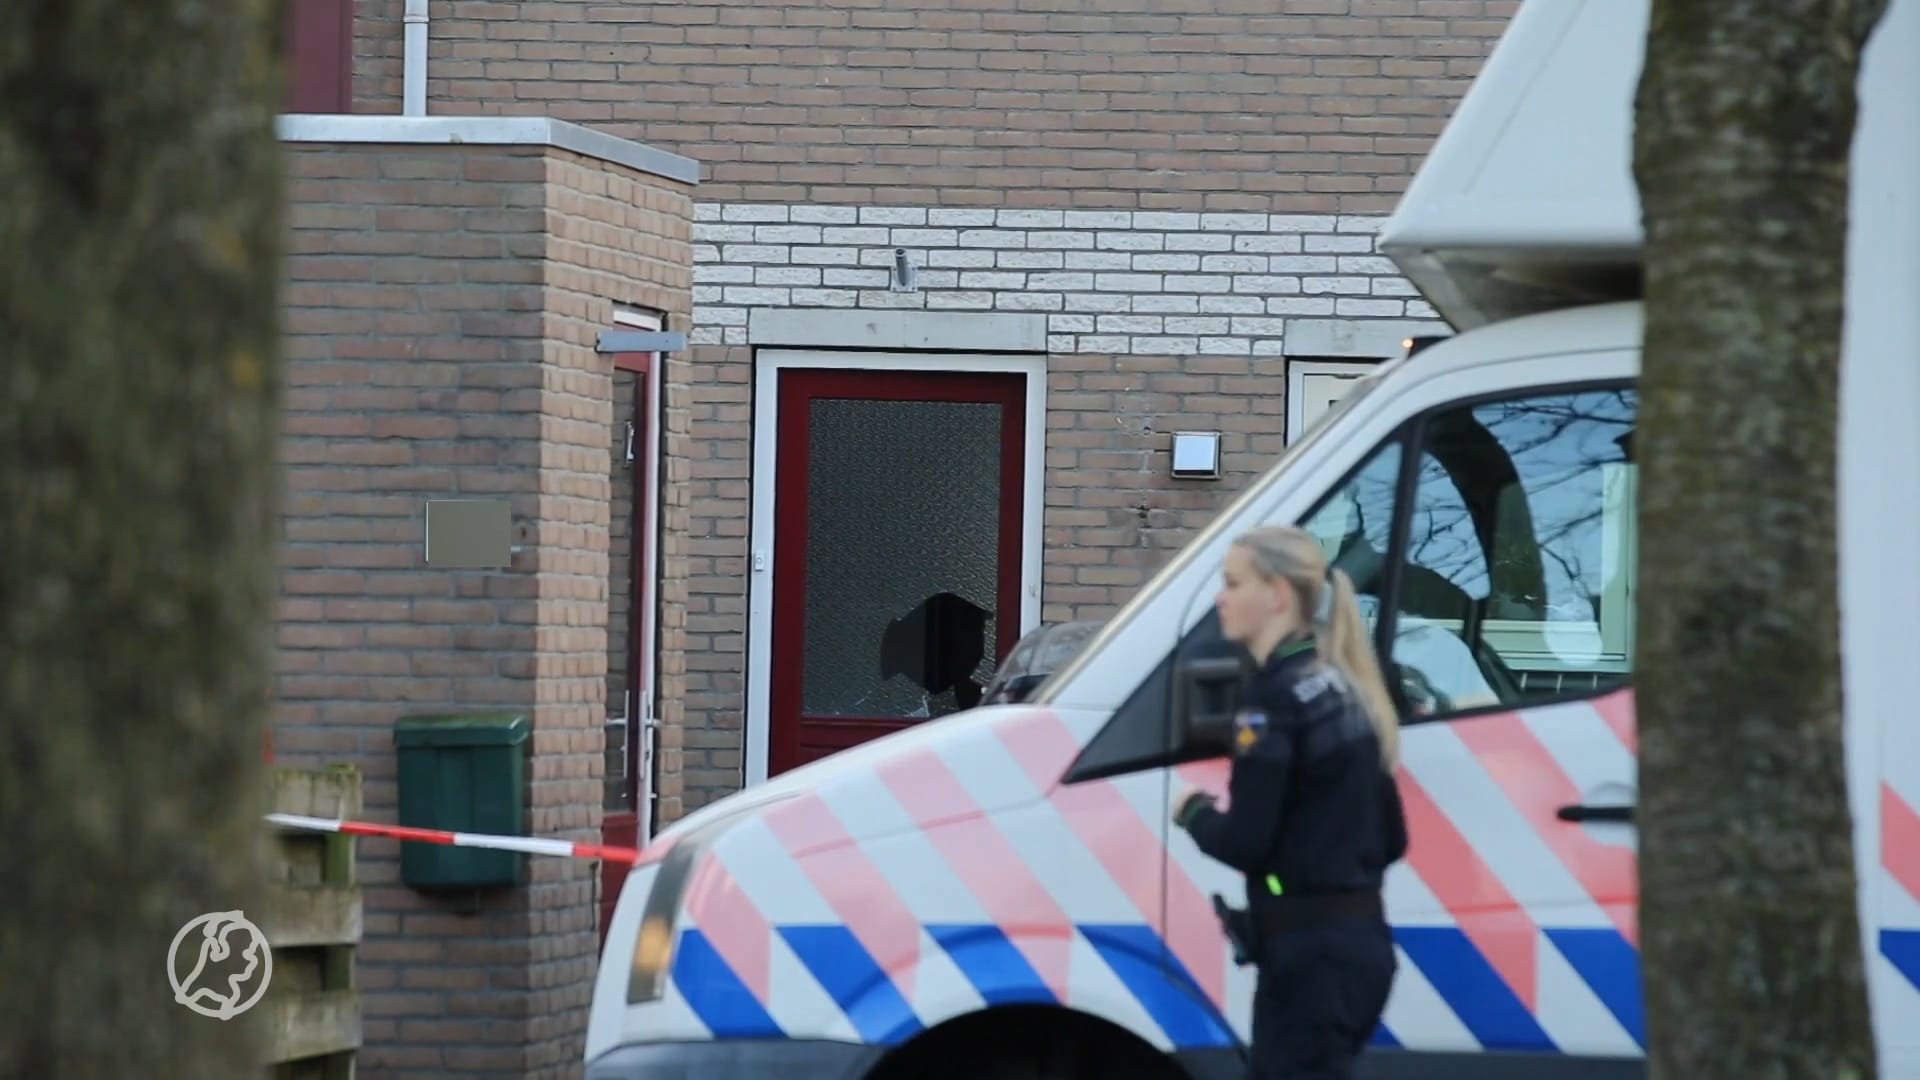 Familie van overleden Femke uit Loenen aan de Vecht: 'Speculaties maken het extra zwaar'